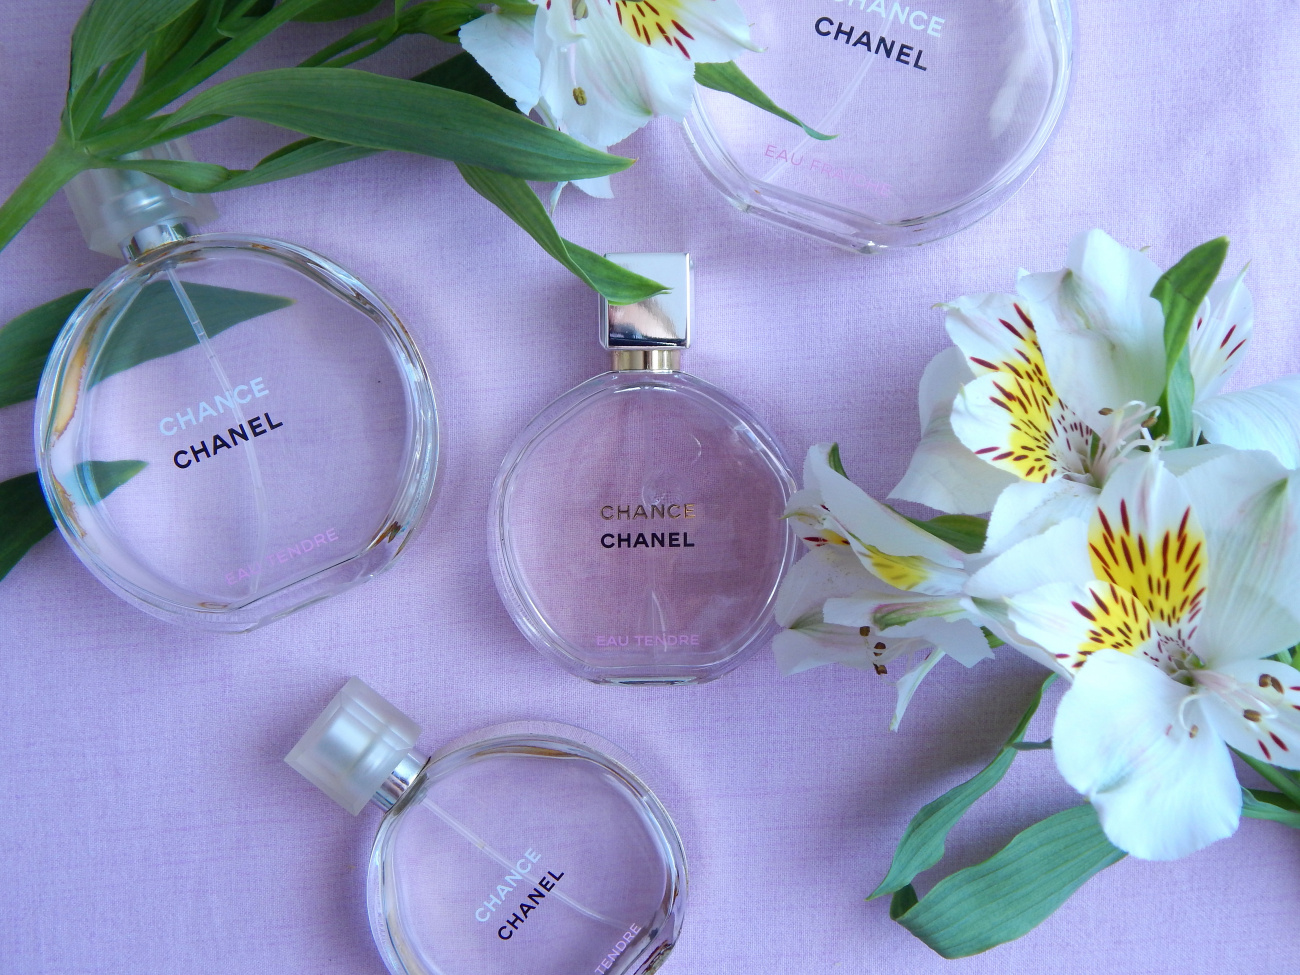 Chanel chance eau tendre отзывы. Шанель шанс цветочно-фруктовые. Шанель шанс виды. Направление аромата - chance Eau tendre. Духи от ламбре Шанель шанс.